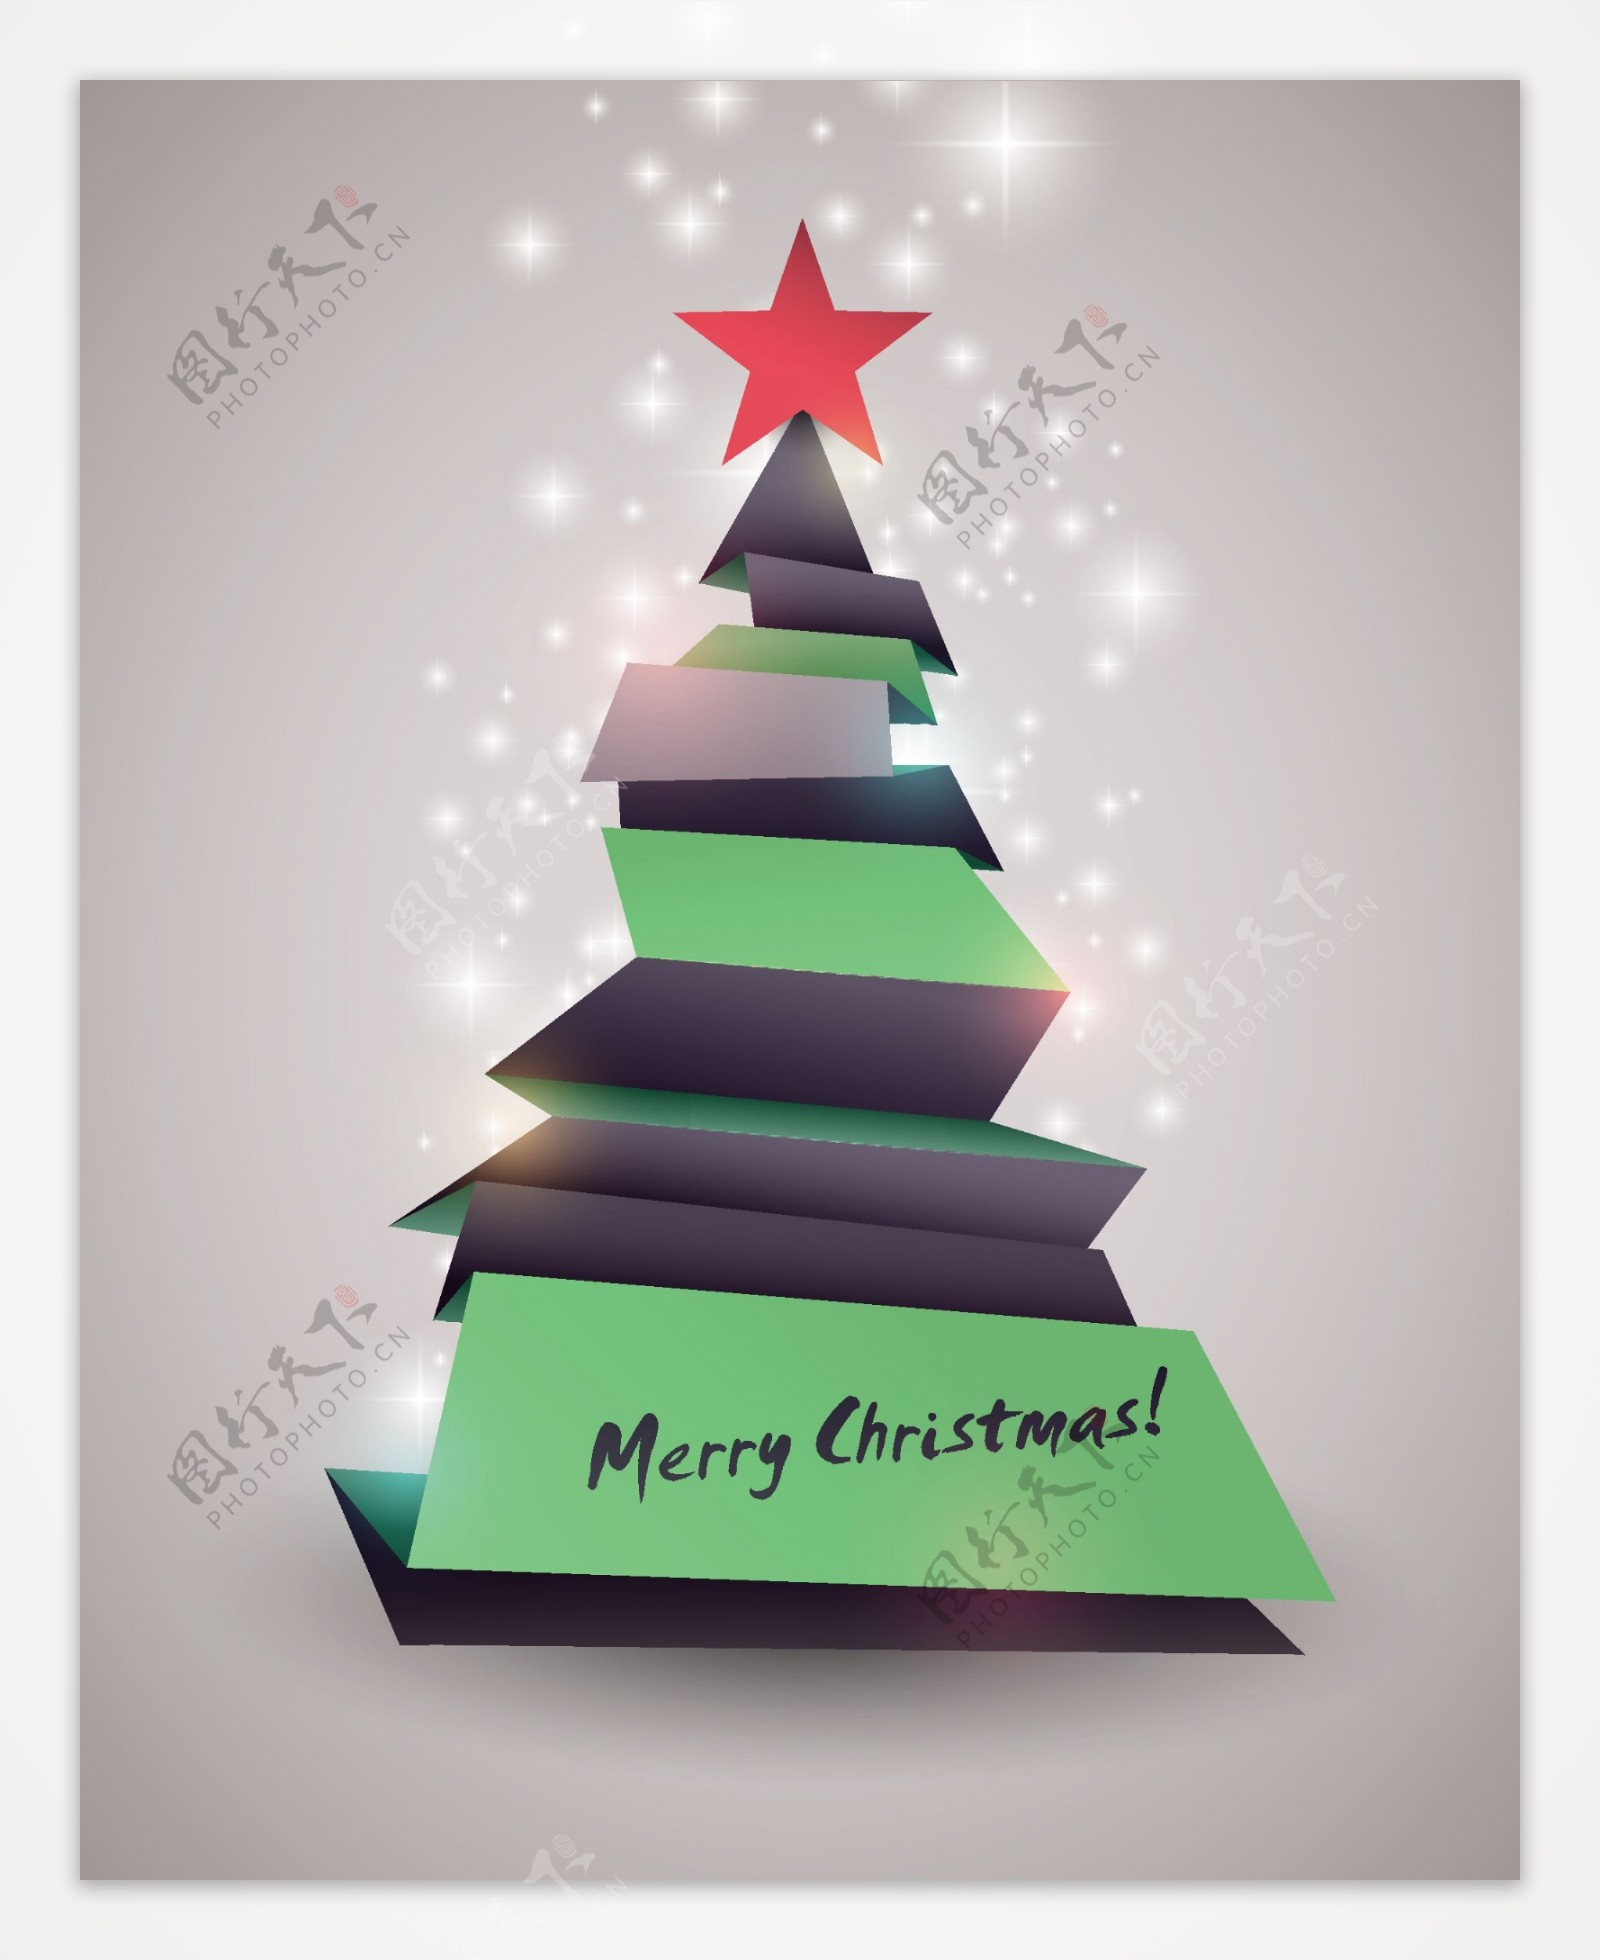 折纸圣诞树图片